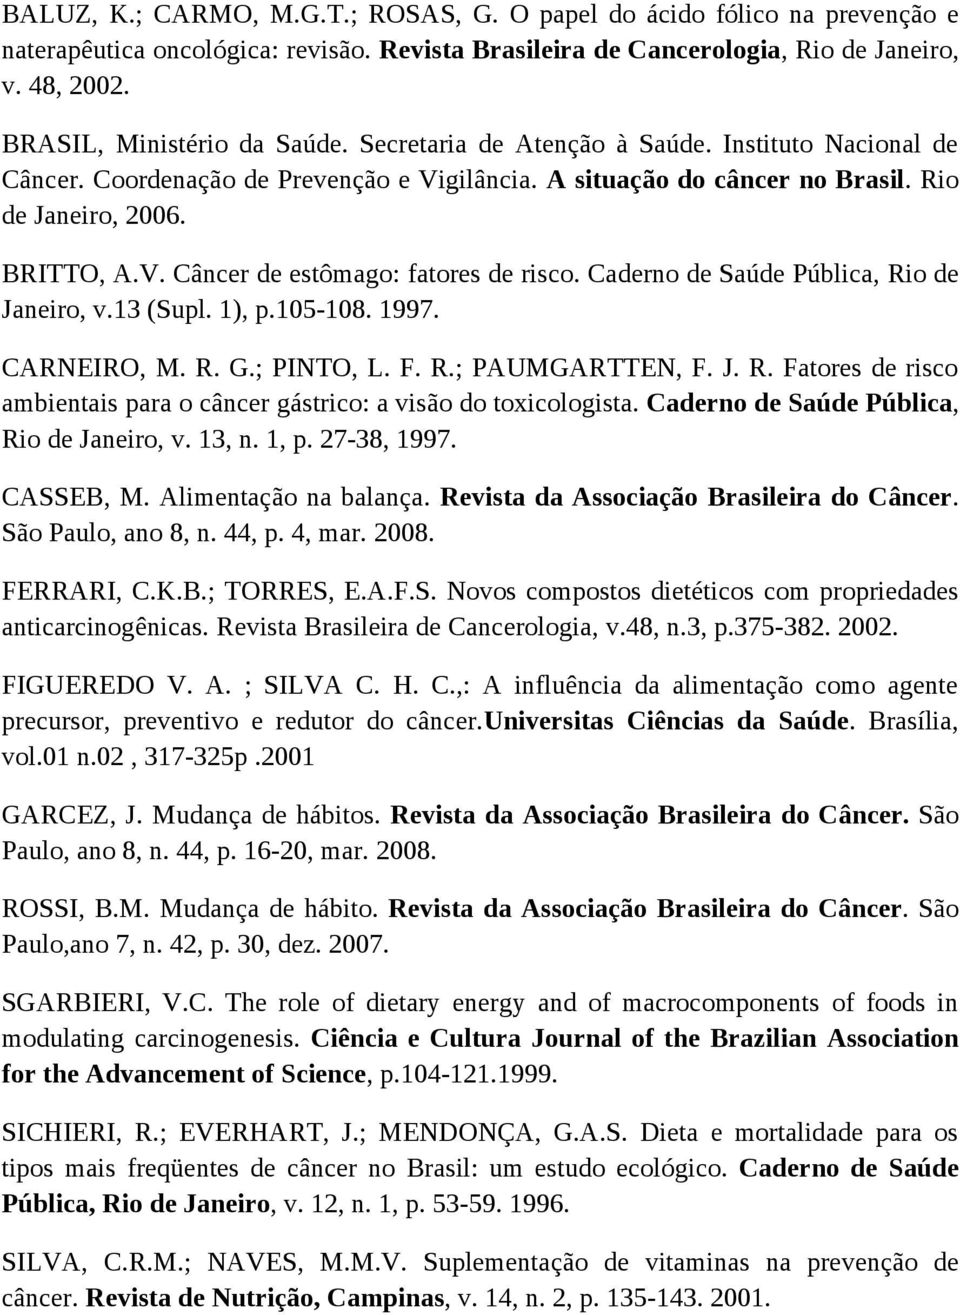 Caderno de Saúde Pública, Rio de Janeiro, v.13 (Supl. 1), p.105-108. 1997. CARNEIRO, M. R. G.; PINTO, L. F. R.; PAUMGARTTEN, F. J. R. Fatores de risco ambientais para o câncer gástrico: a visão do toxicologista.